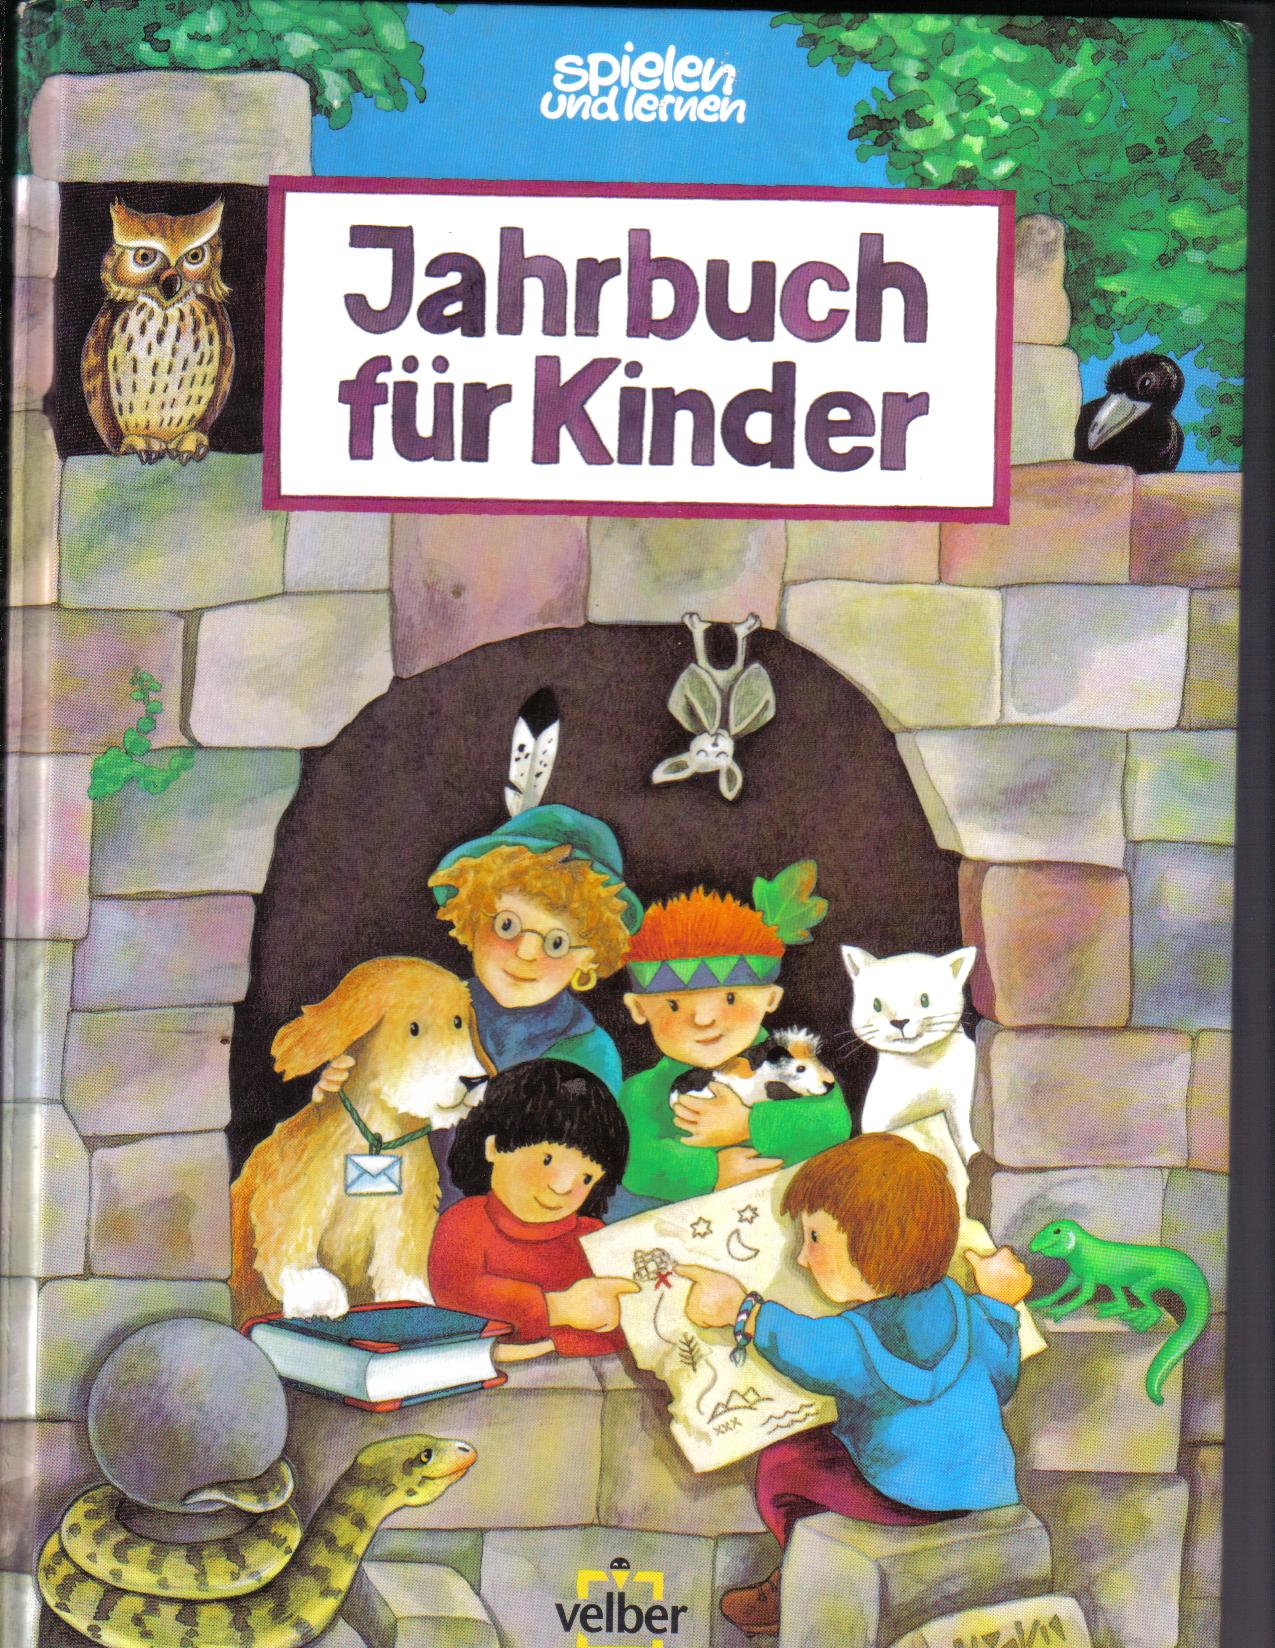 Jahrbuch fuer Kinder	spielen und lernen